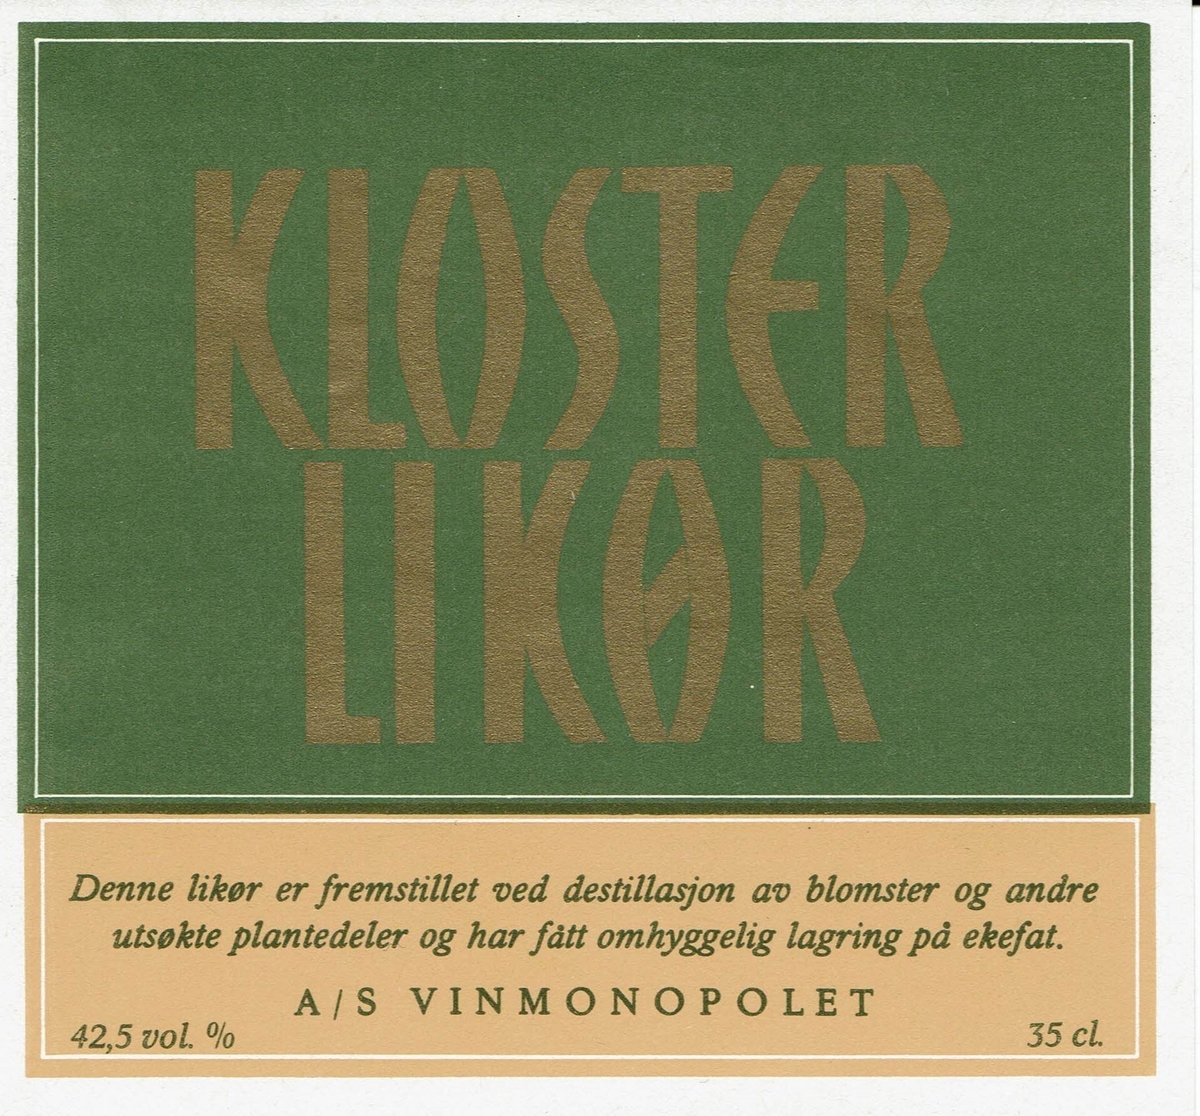 Kloster Liikør. A/S Vinmonopolet. Denne likør er fremstillet ved destillasjon av blomster og andre utsøkte plantedeler og har fått omhyggelig lagring på ekefat. 